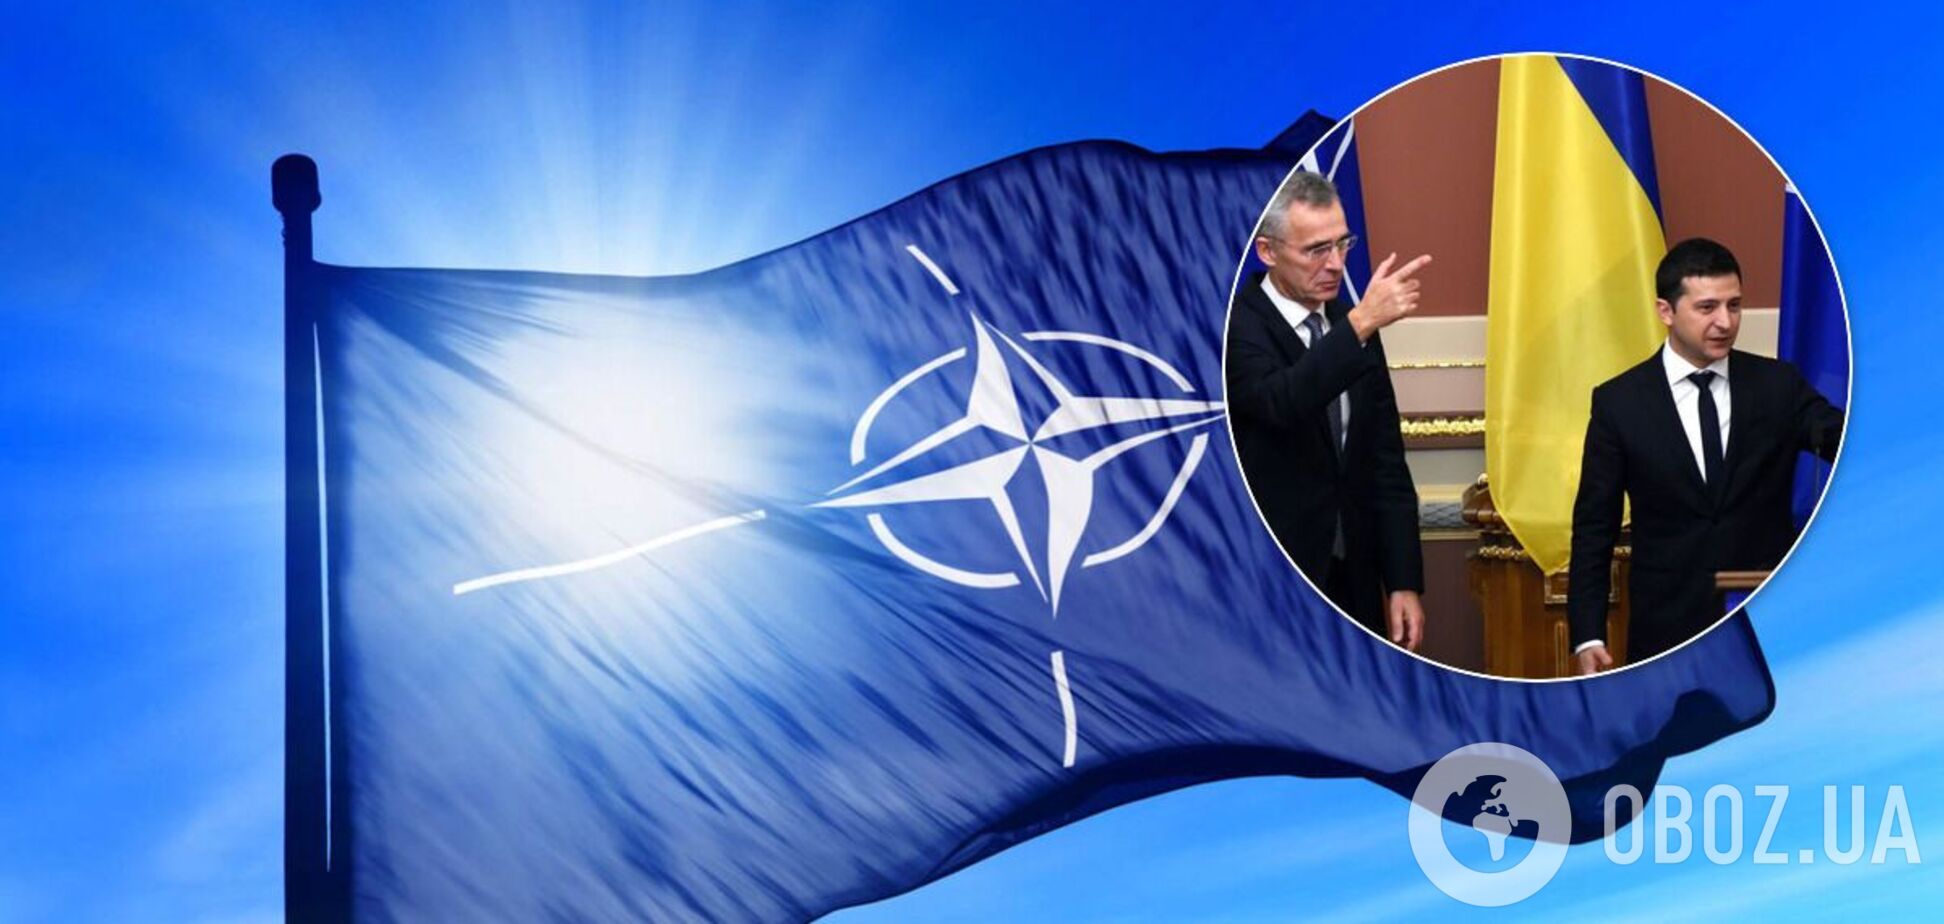 Киев рассчитывает стать членом НАТО в 2030 году